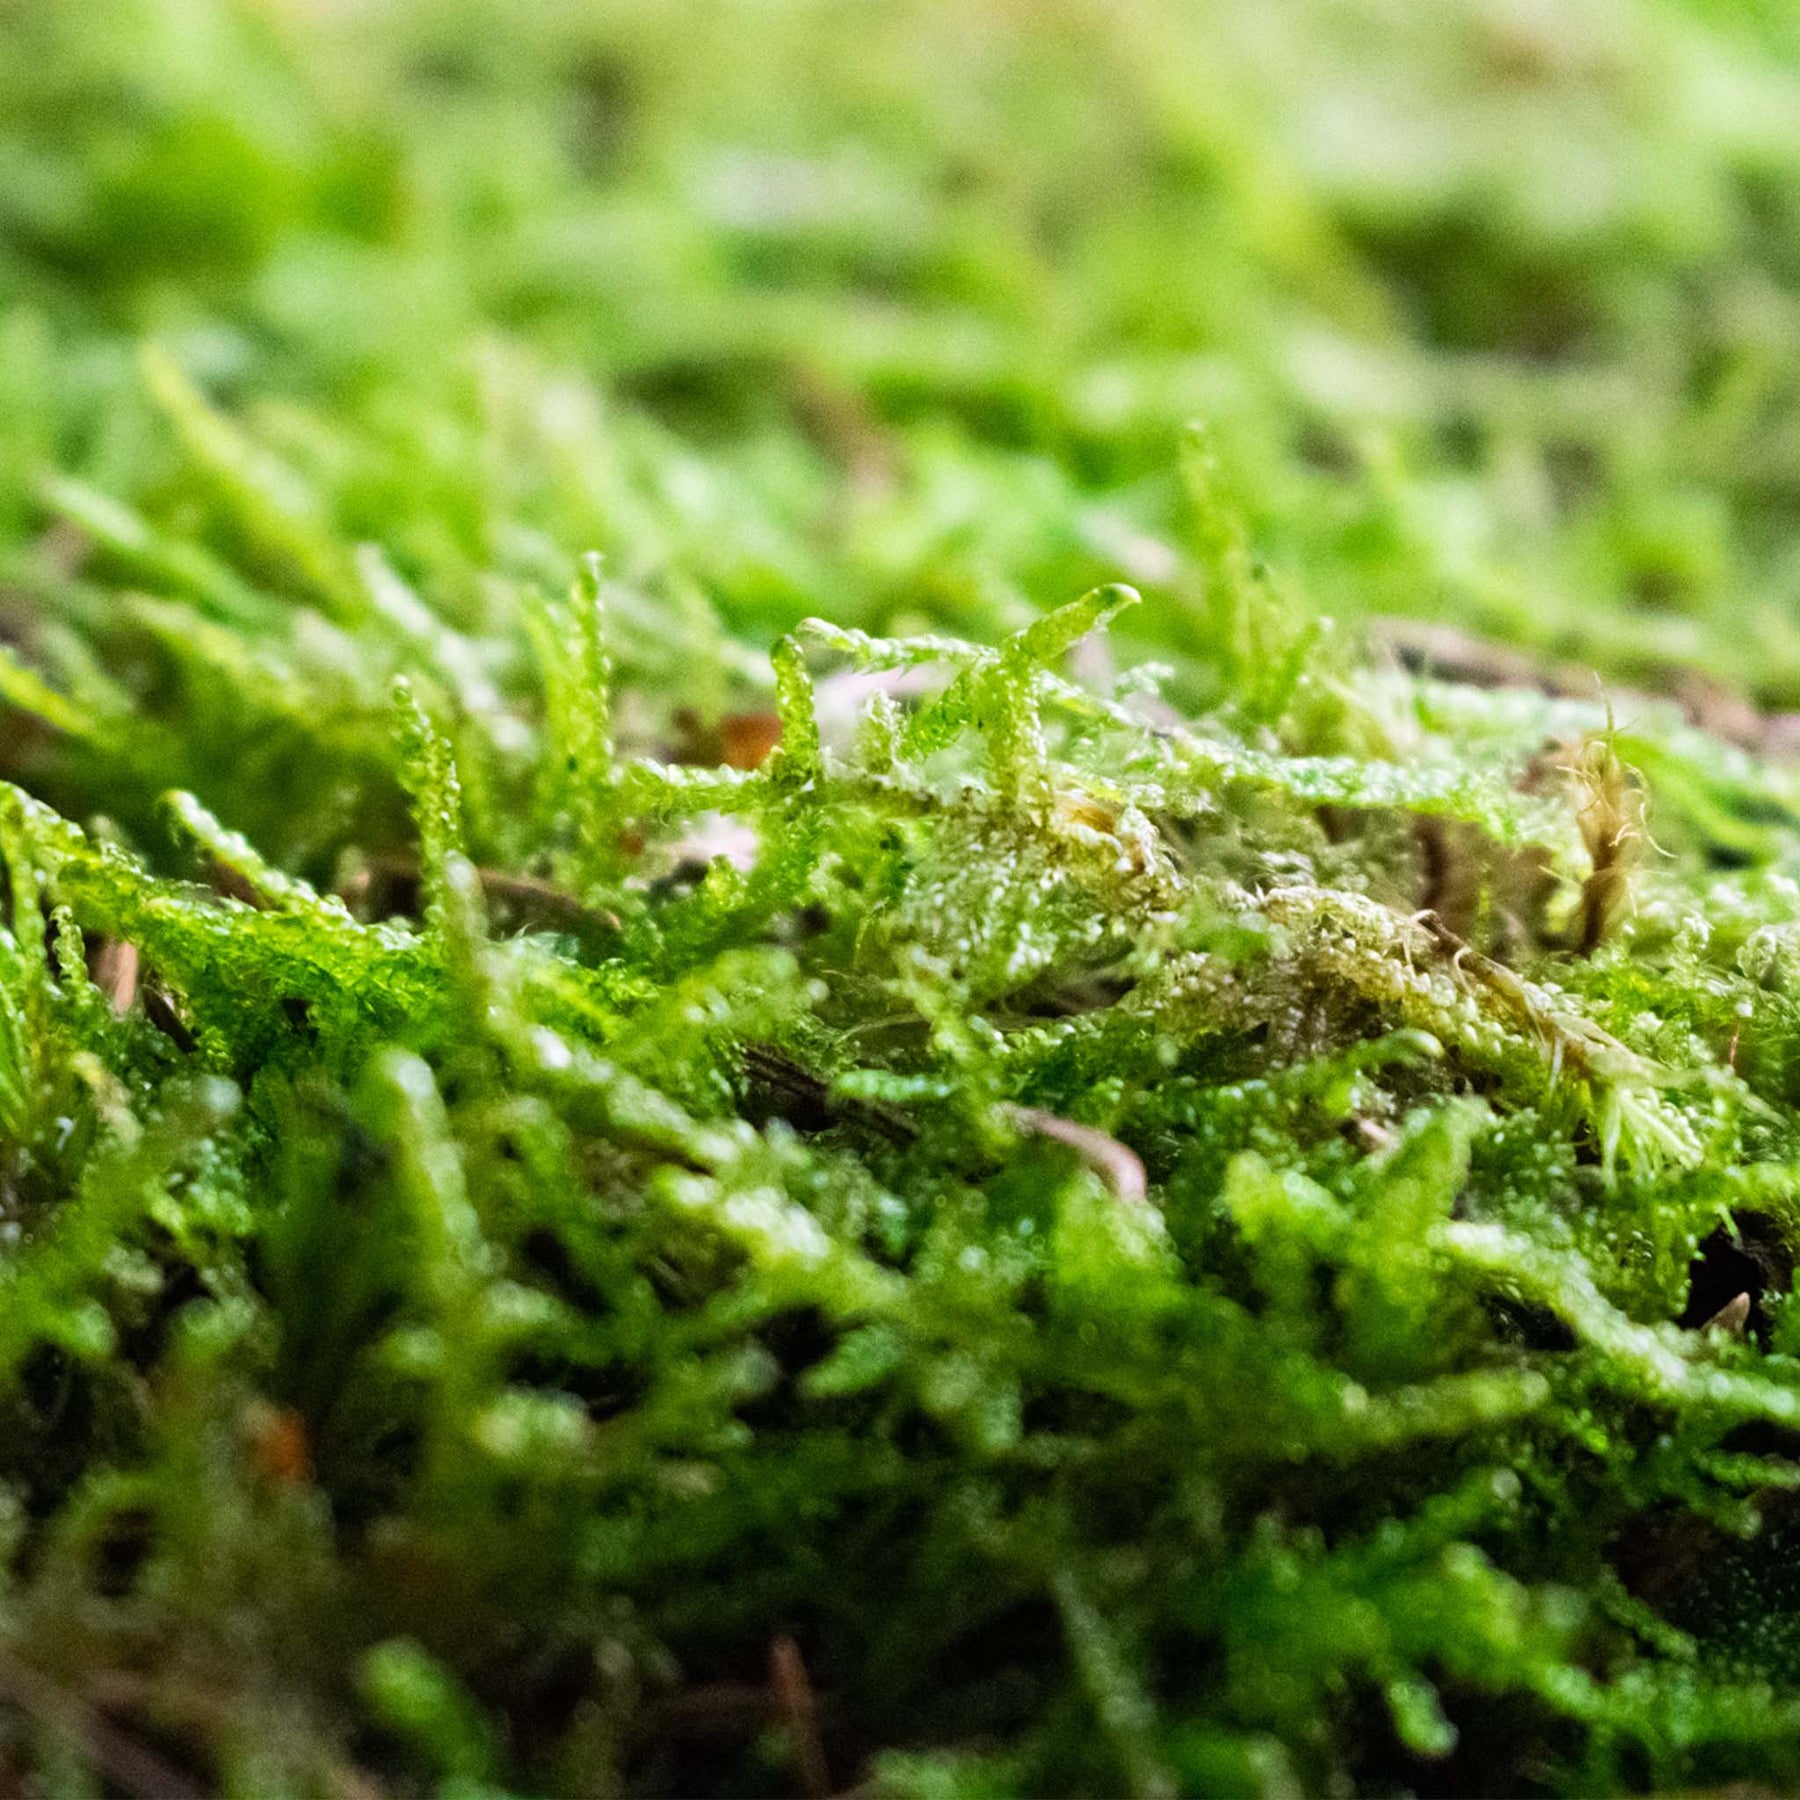 Live Carpet Moss for Terrariums Flat Moss Carpet Moss Mossarium